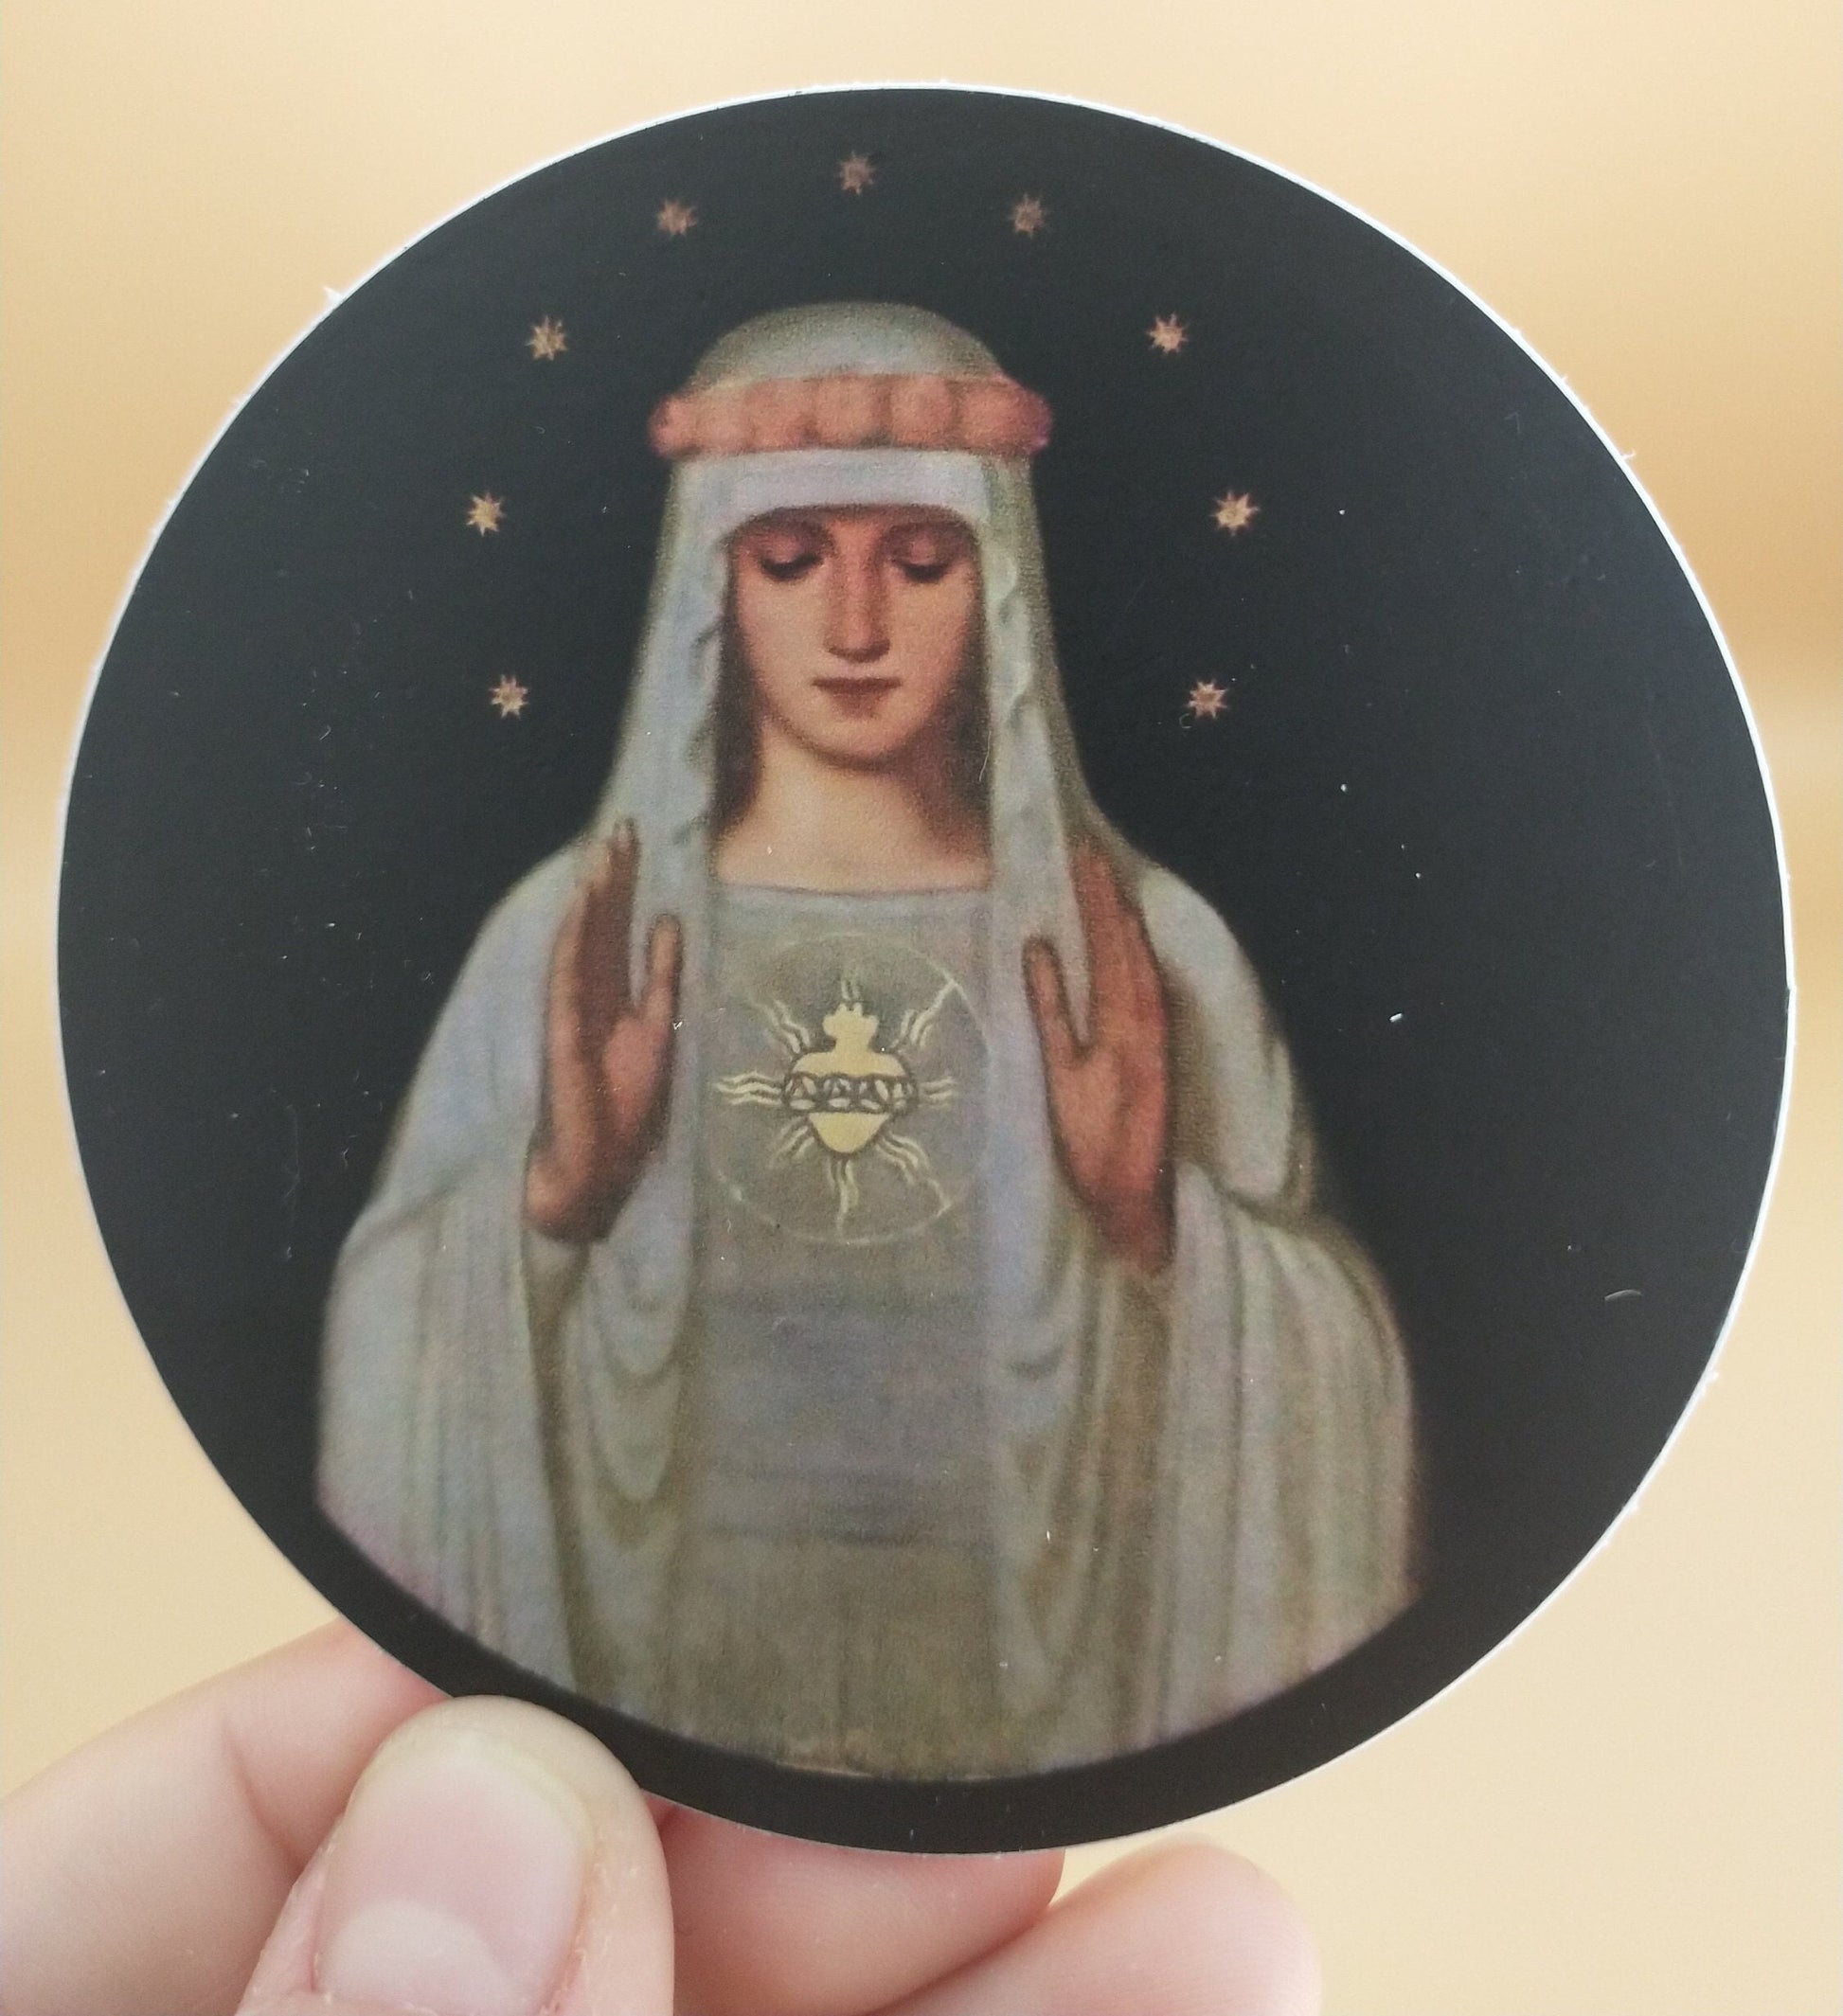 Christian Stickers, Original Artistic Catholic Stickers. Original Art Vinyl  Stickers